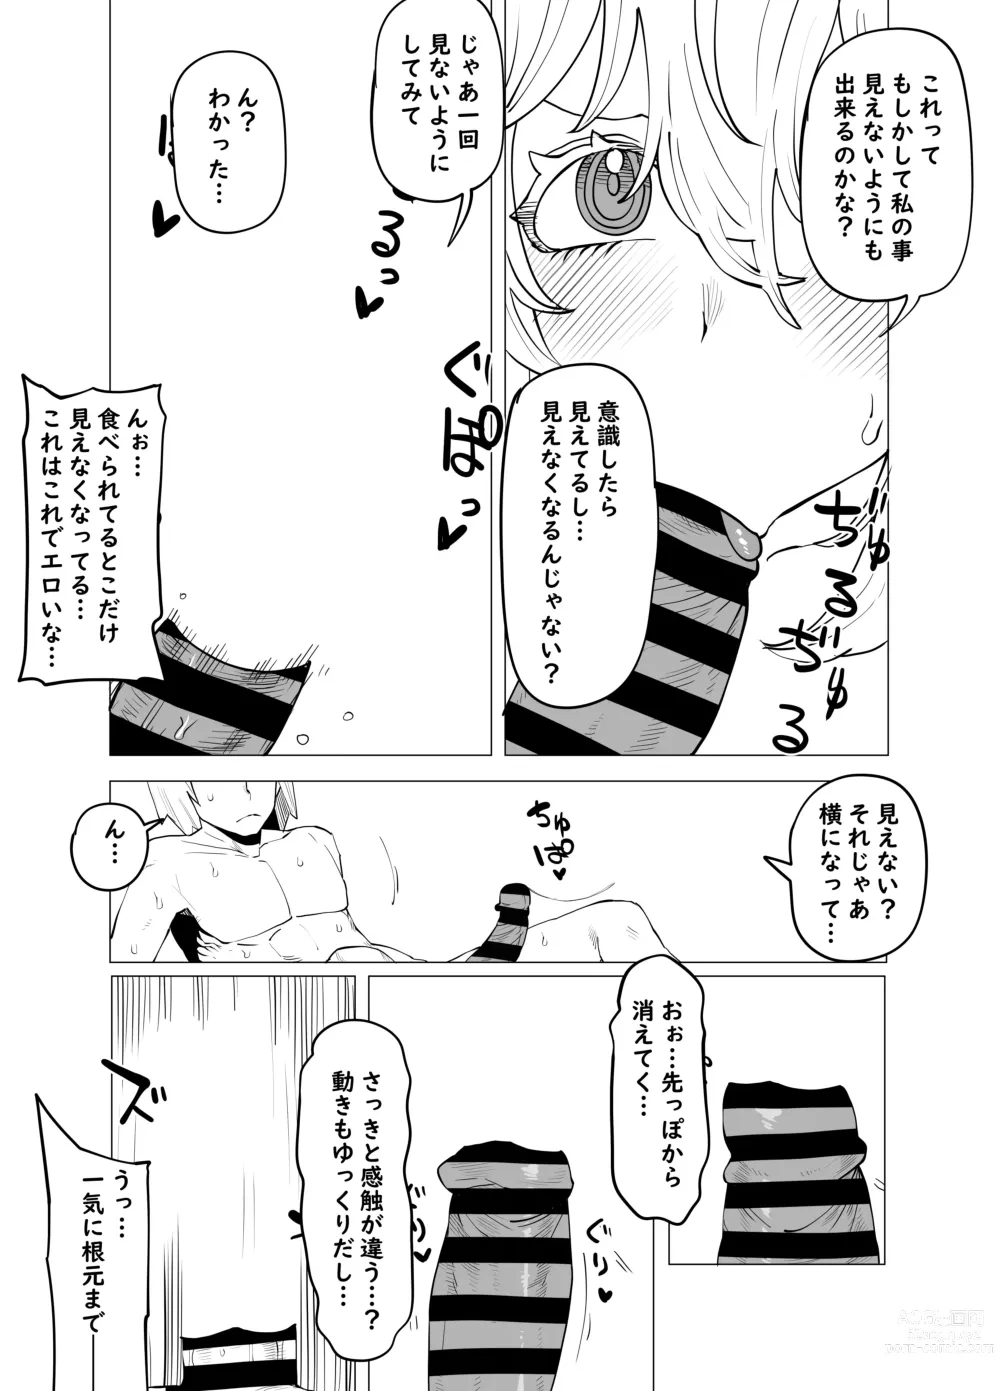 Page 7 of doujinshi Teisou Gyakuten Butsu ~Hagakure no Baai~